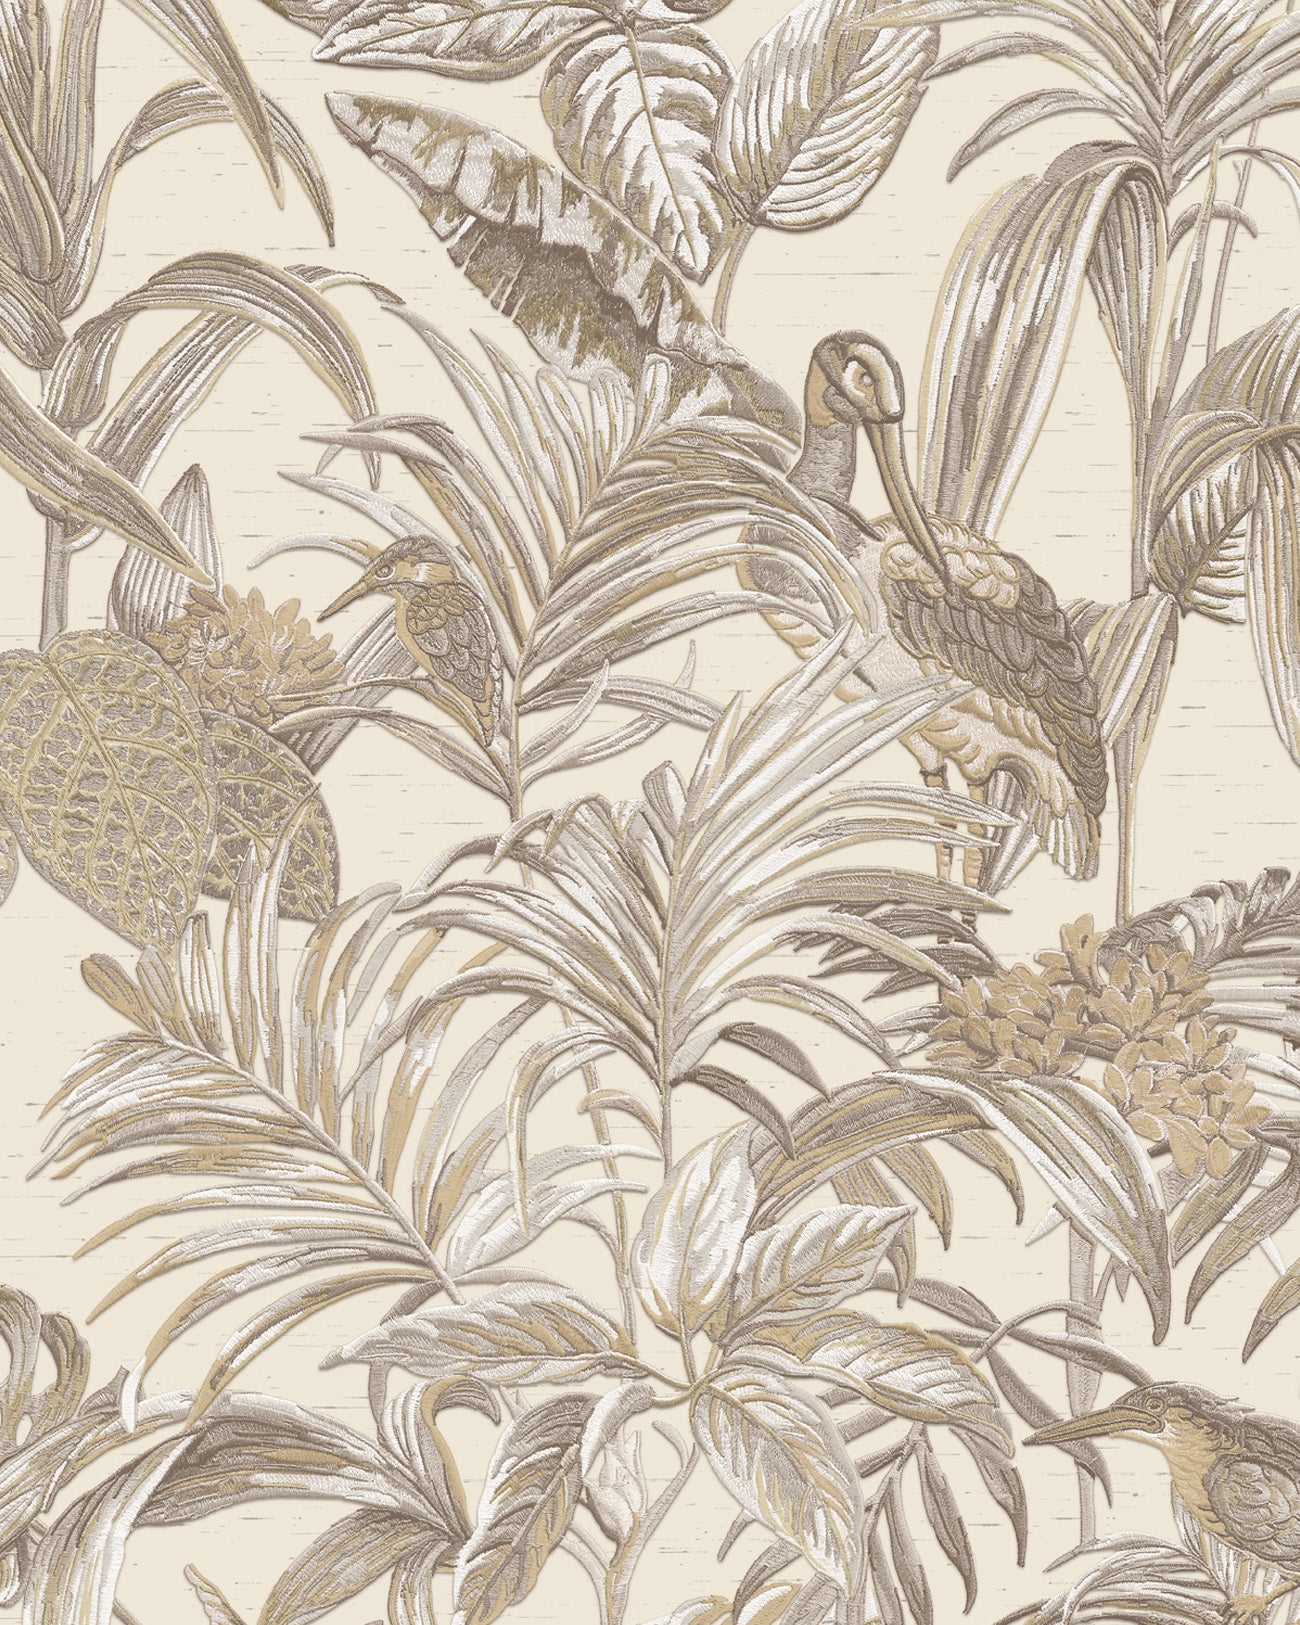 Papier peint moitf d'oiseaux Profhome DE120012-DI papier peint intissé gaufré à chaud gaufré avec un dessin exotique brillant ivoire blanc-crème bronze 5,33 m2